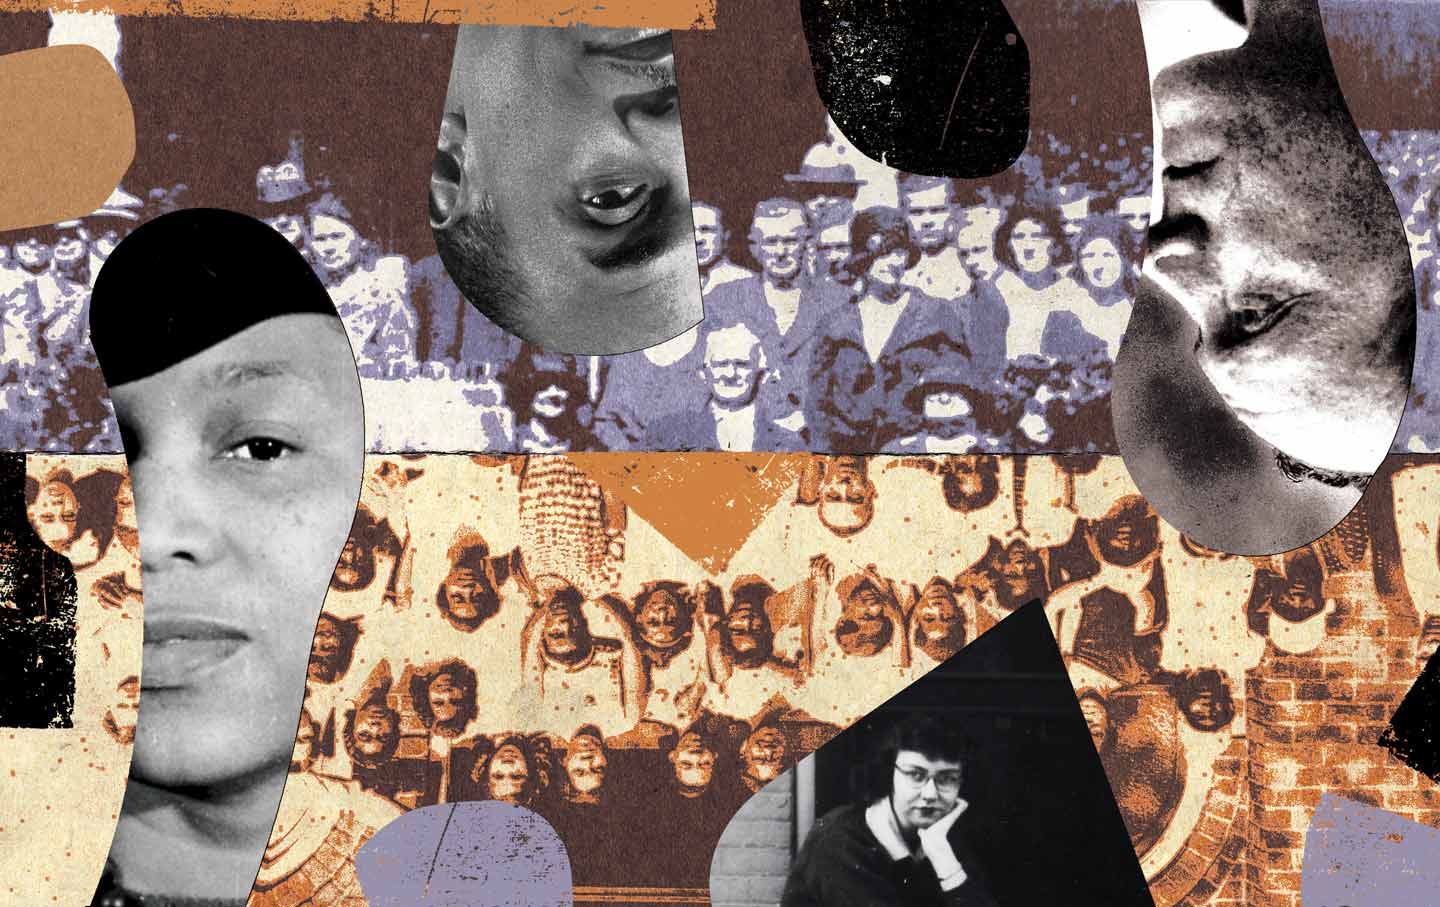 James Baldwin, Robert Penn Warren, and the Politics of Southern Multiculturalism